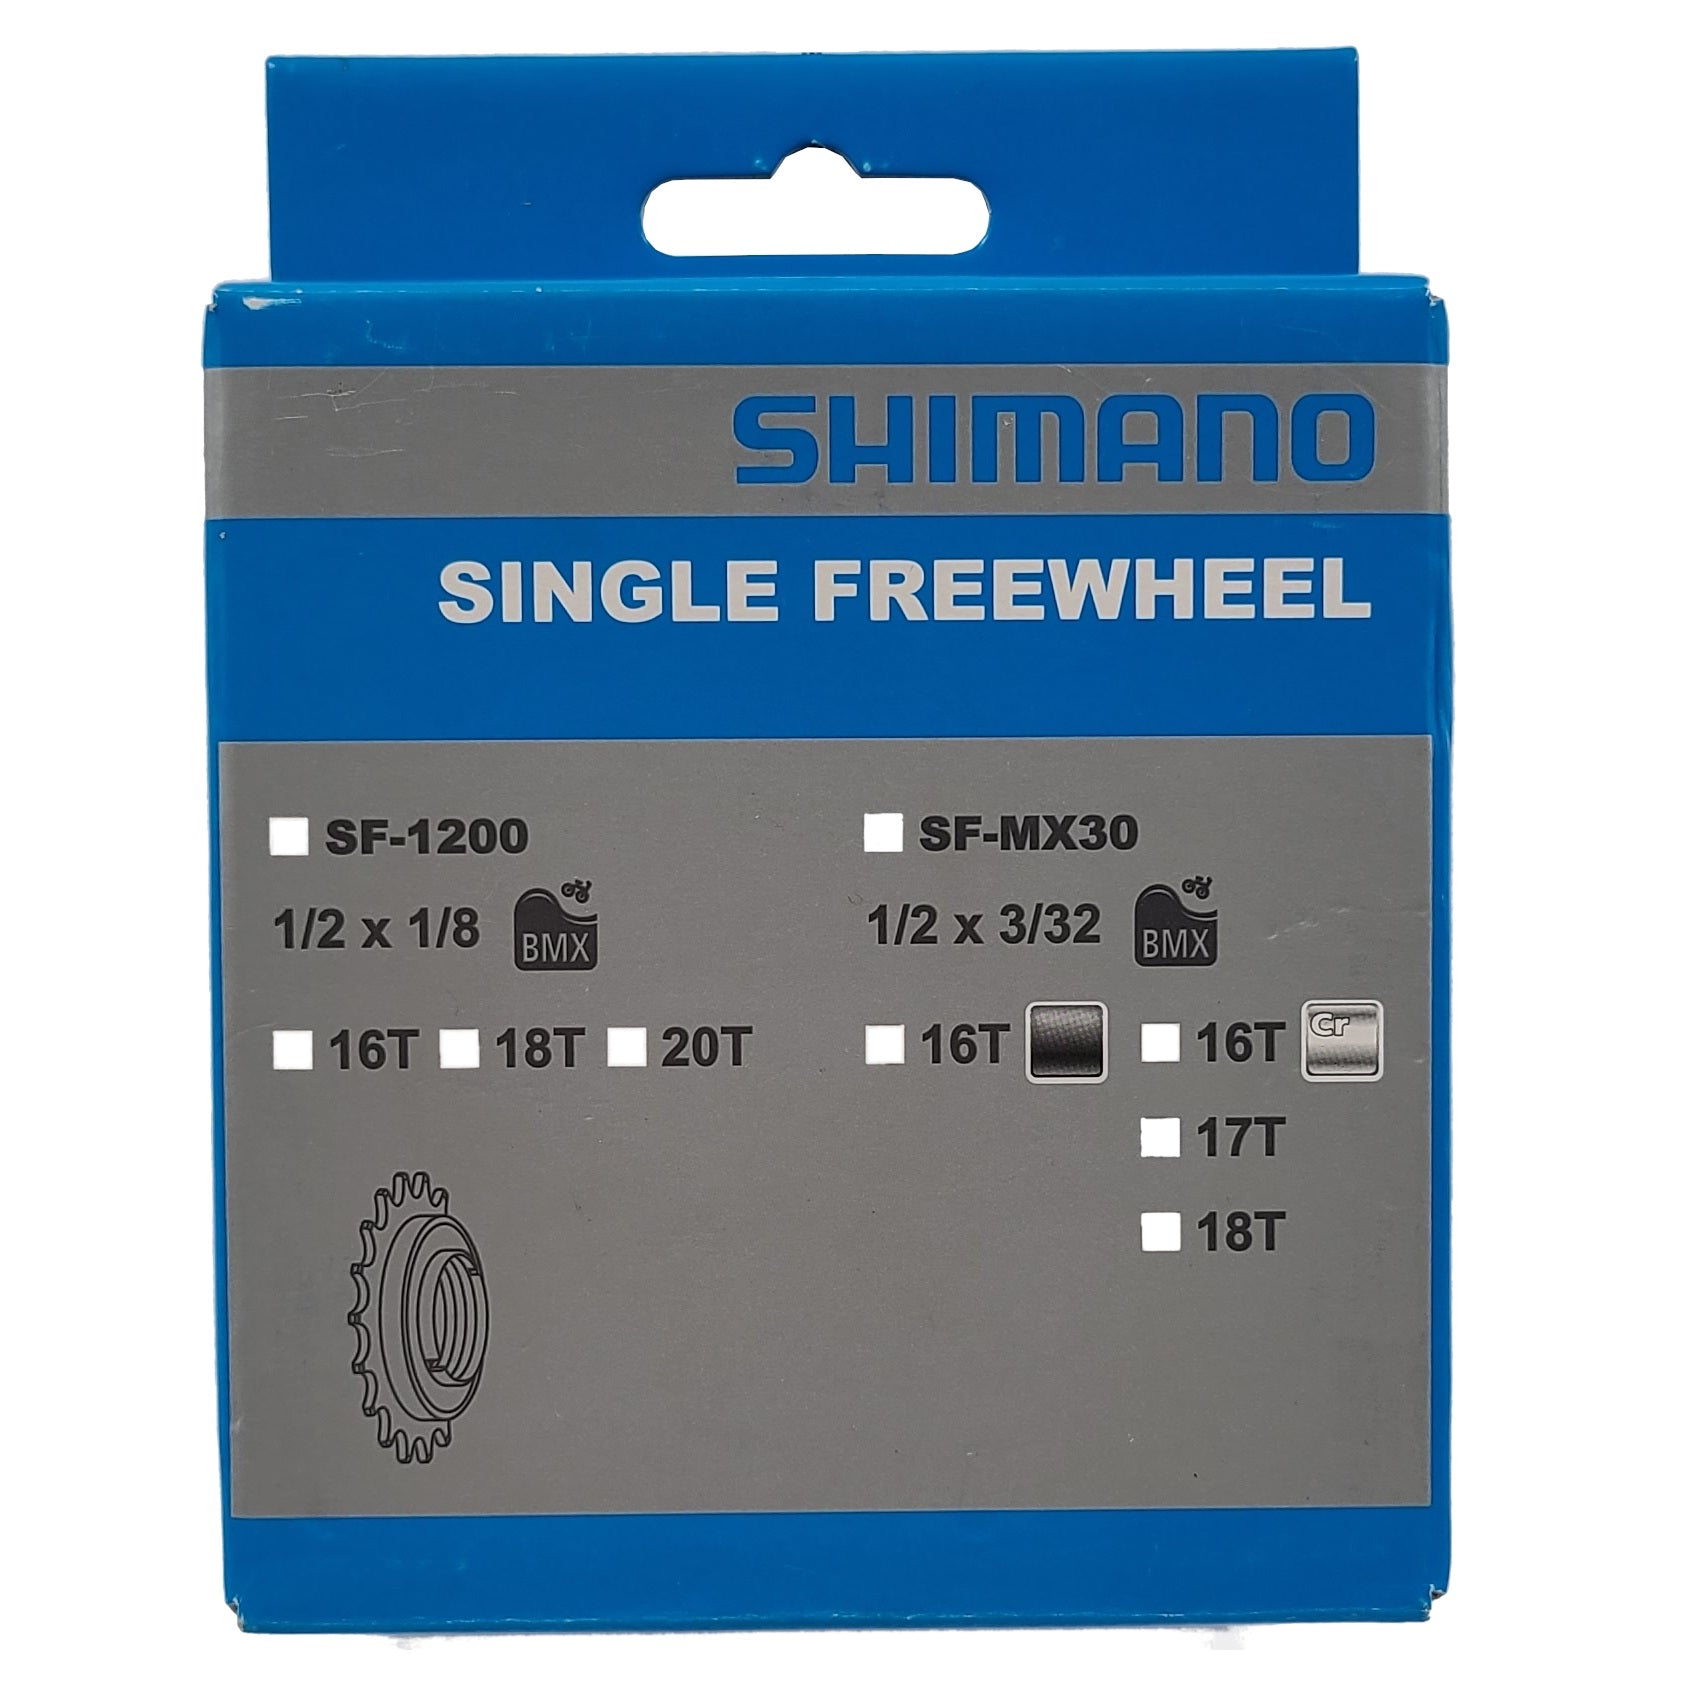 Shimano SF-MX30 Chrome 3/32" Freewheel - The Bikesmiths